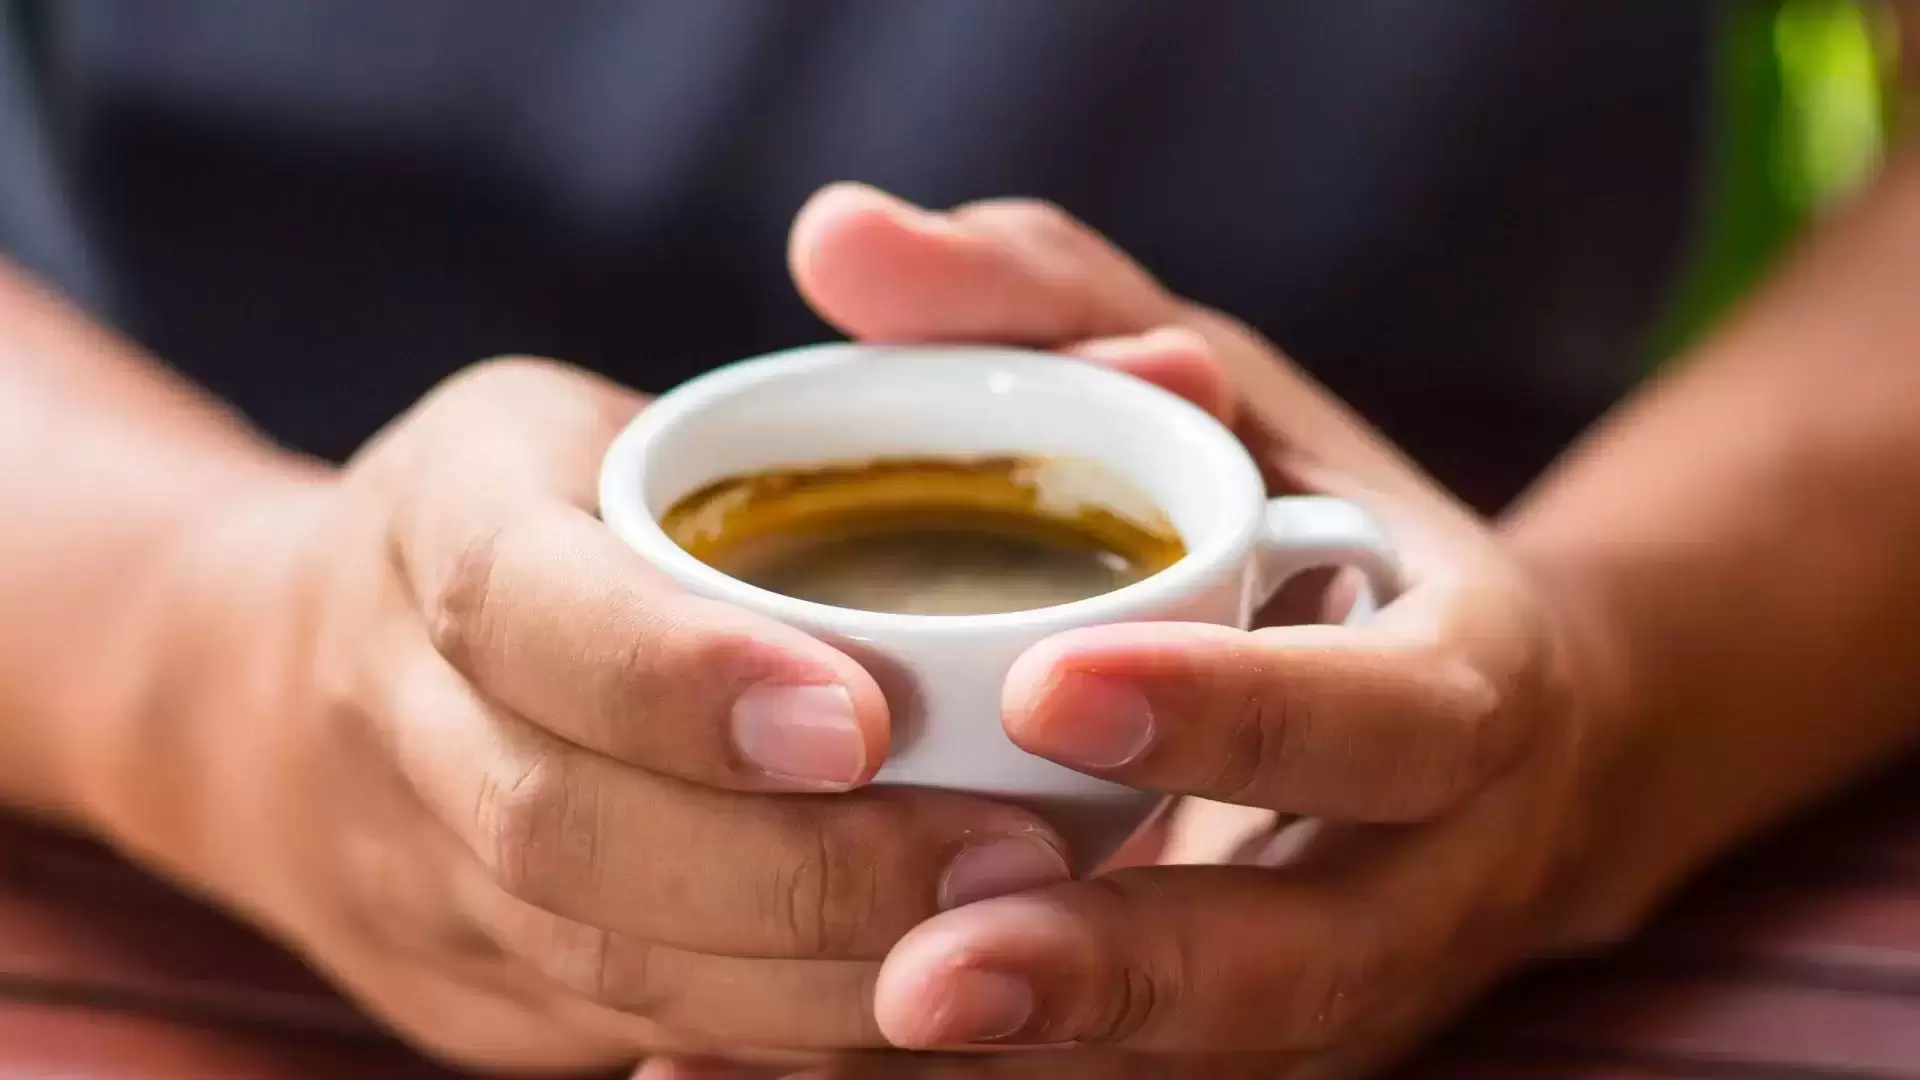 Vaistininkė: rytinis kavos puodelis – ne vienintelis būdas pabusti